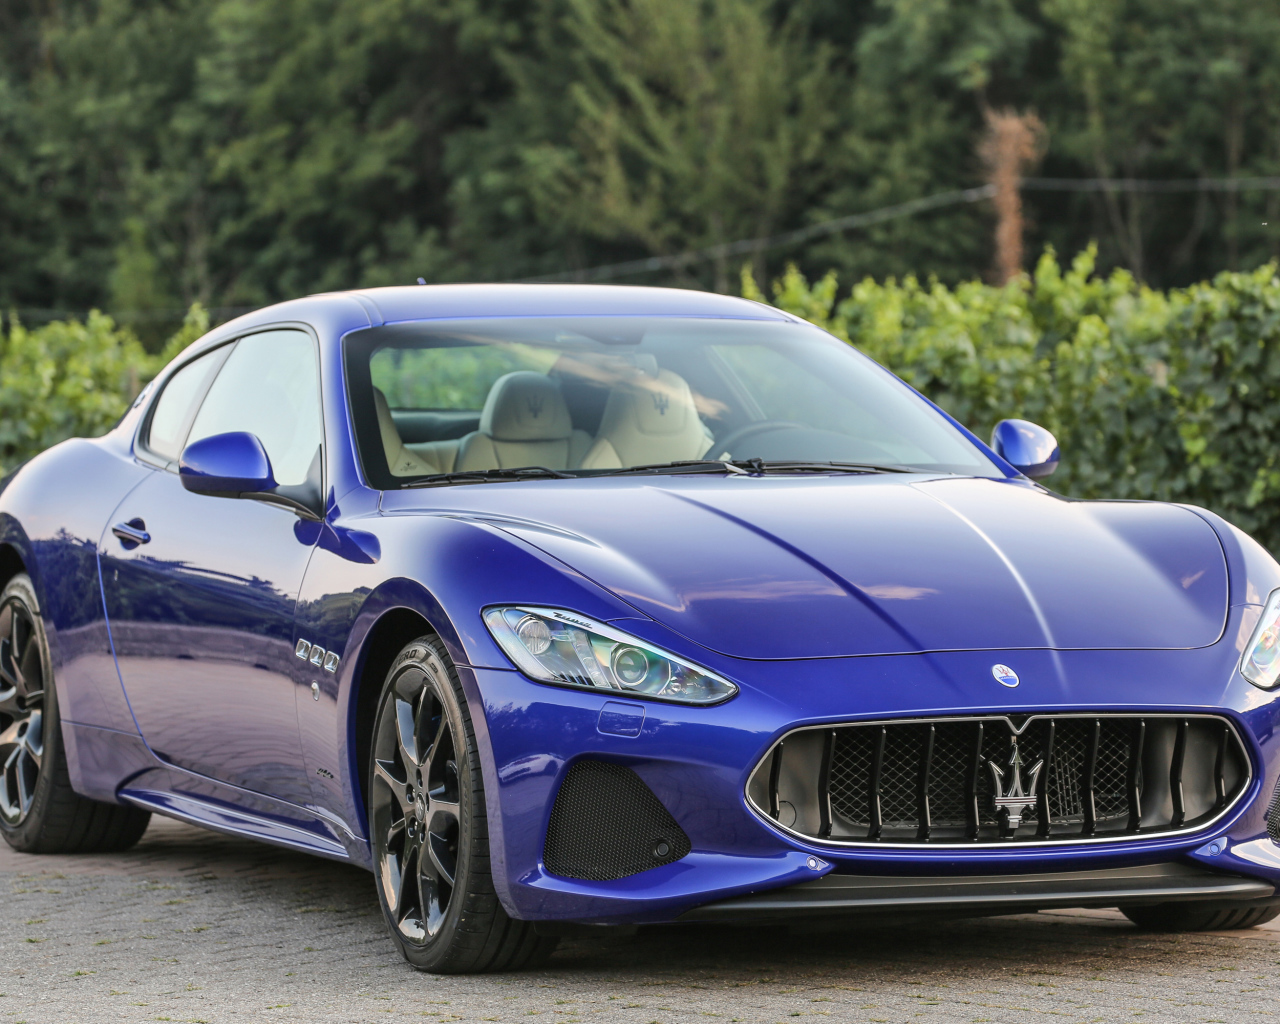 Стильный автомобиль Maserati GranTurismo цвет синий металлик